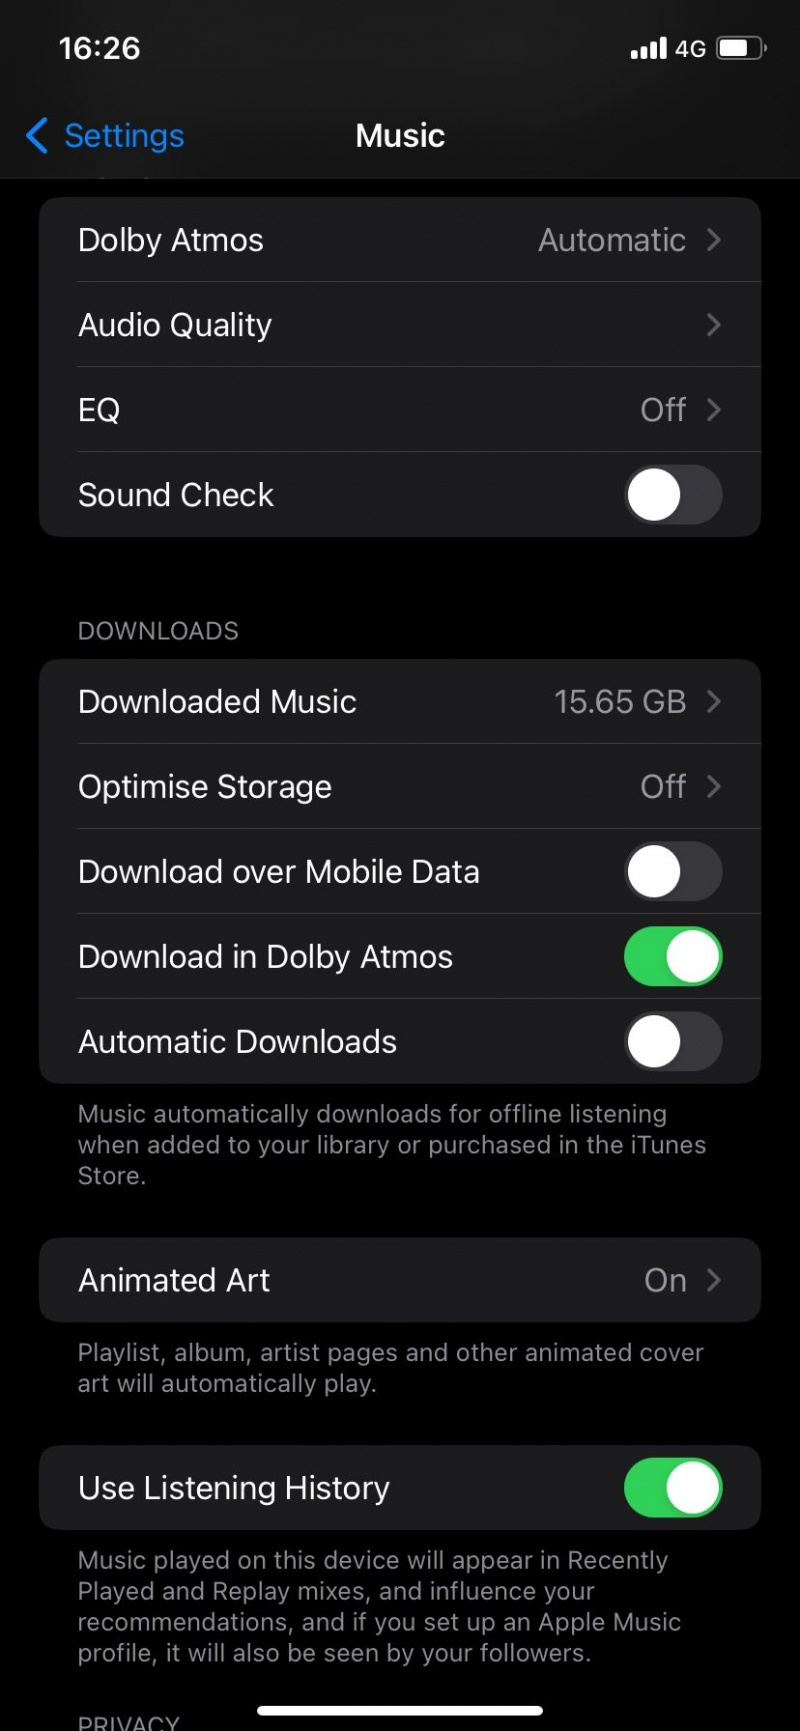   Prenos prek mobilnih podatkov je onemogočen v storitvi Apple Music